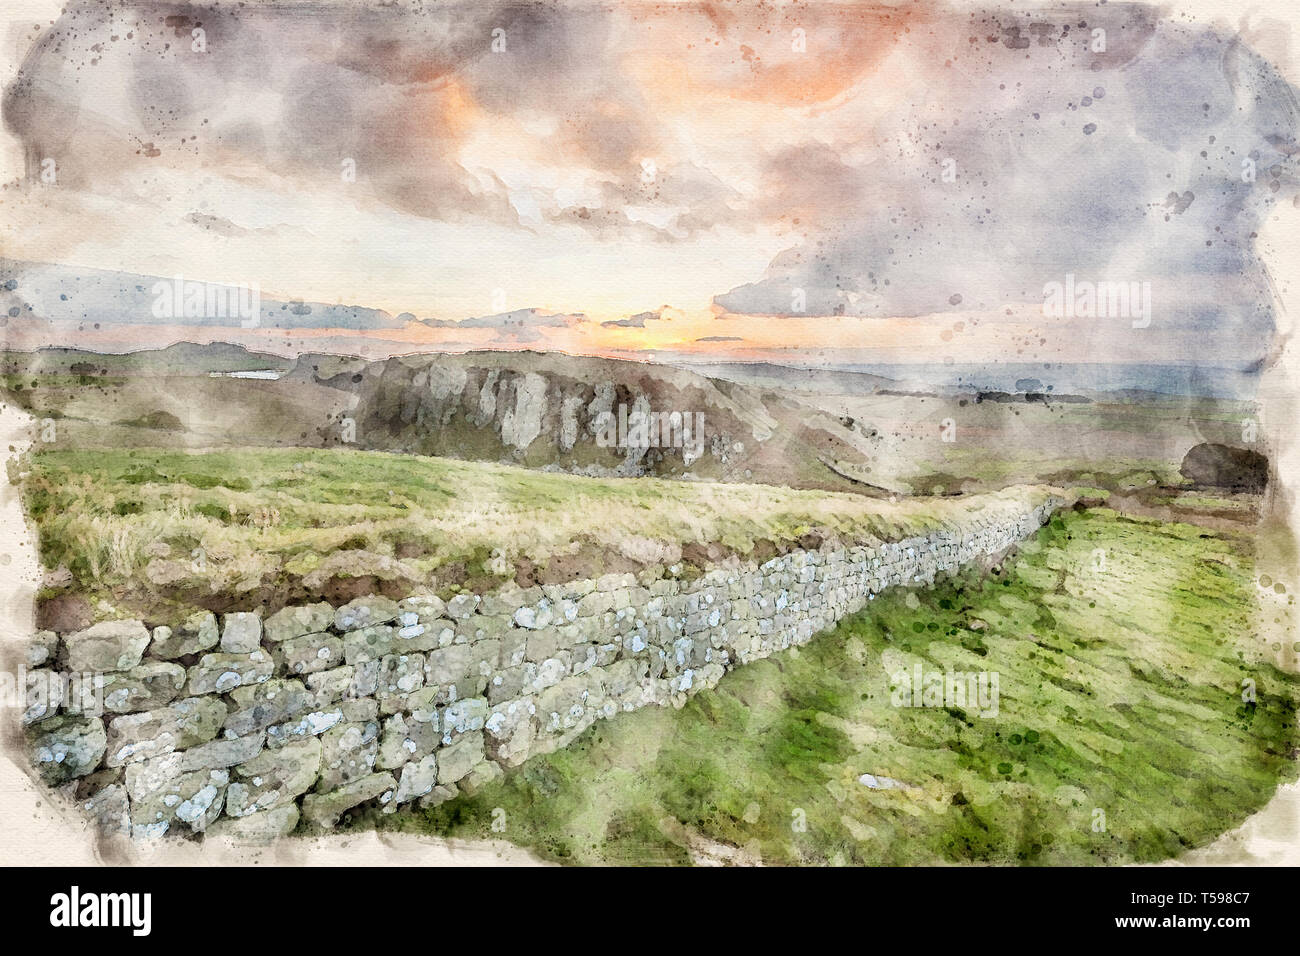 Aquarell von einem Foto von Hadrian's Wall auf der Suche nach Westen Richtung Steel Rigg, Cumbria, England, Großbritannien Stockfoto